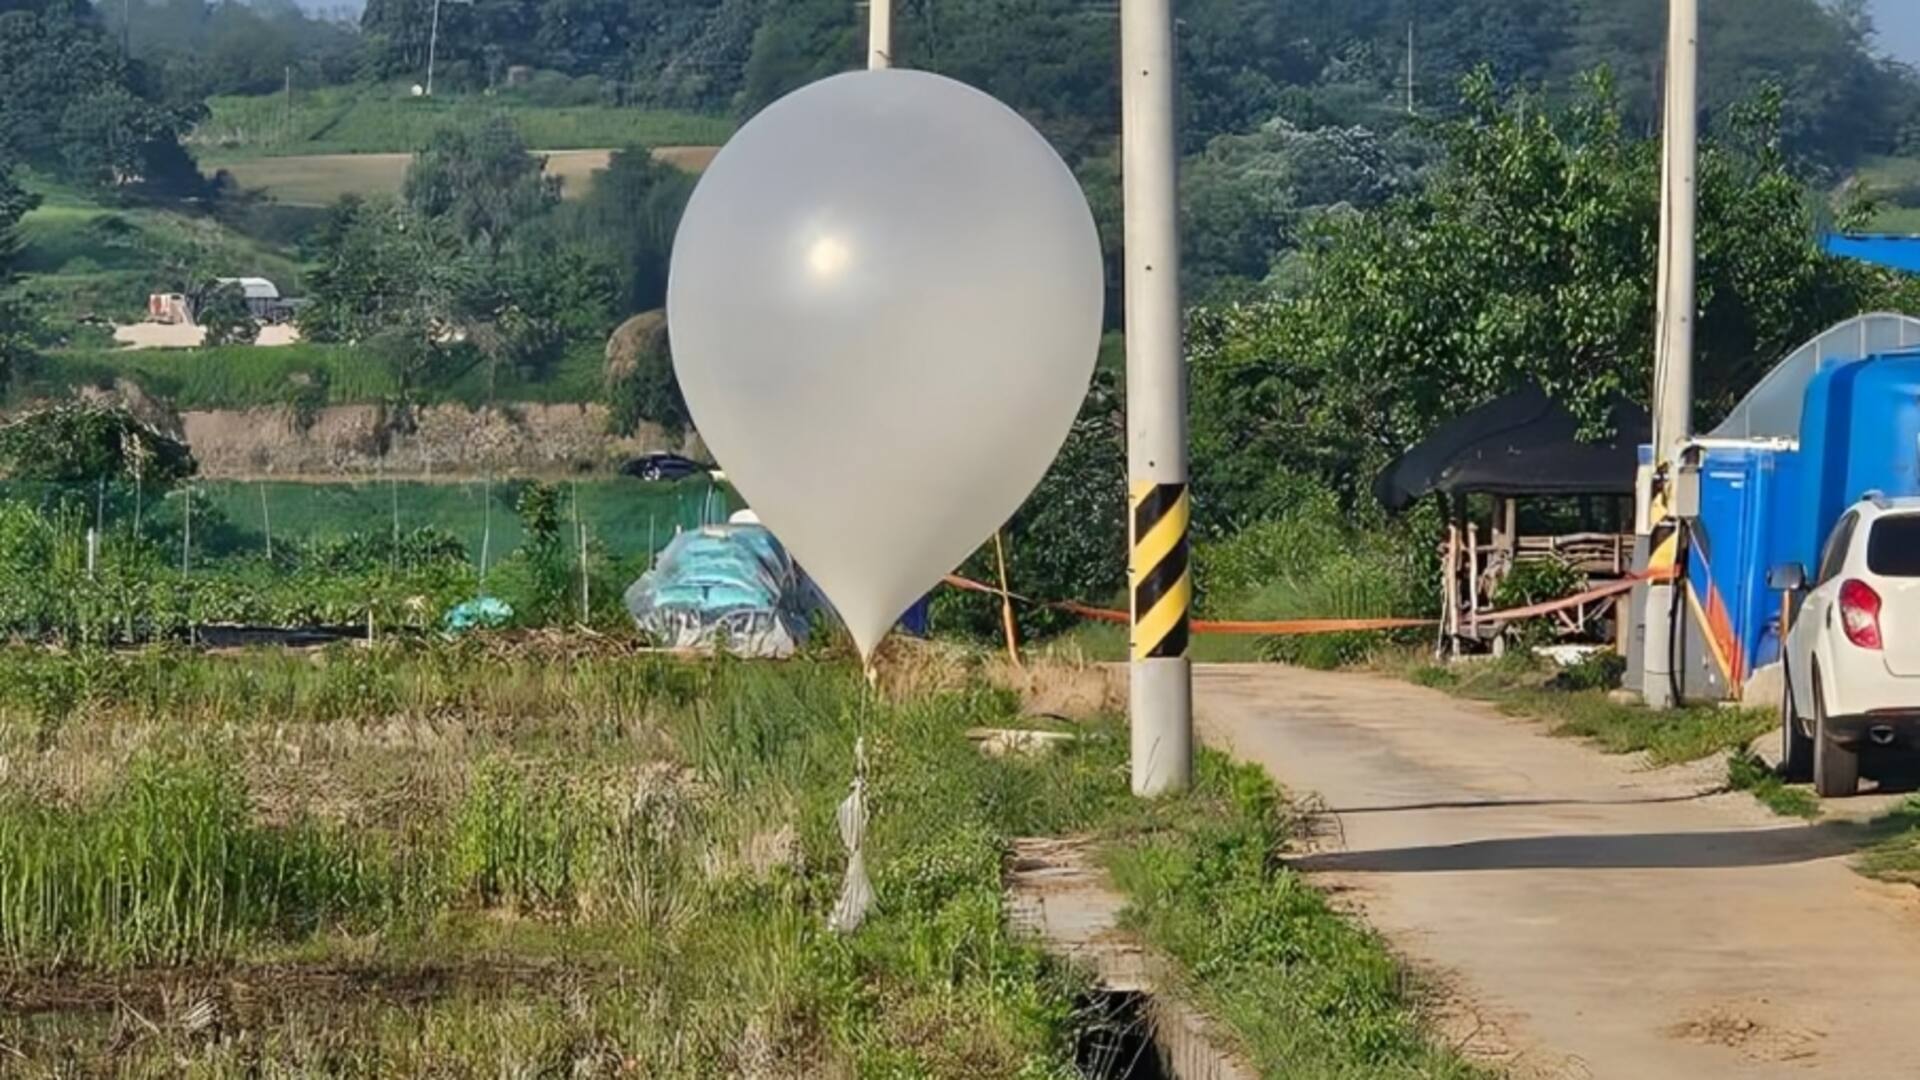 किम जोंग उन ने दक्षिण कोरिया को गुब्बारे से भिजवाया कचरा, दहशत में लोग